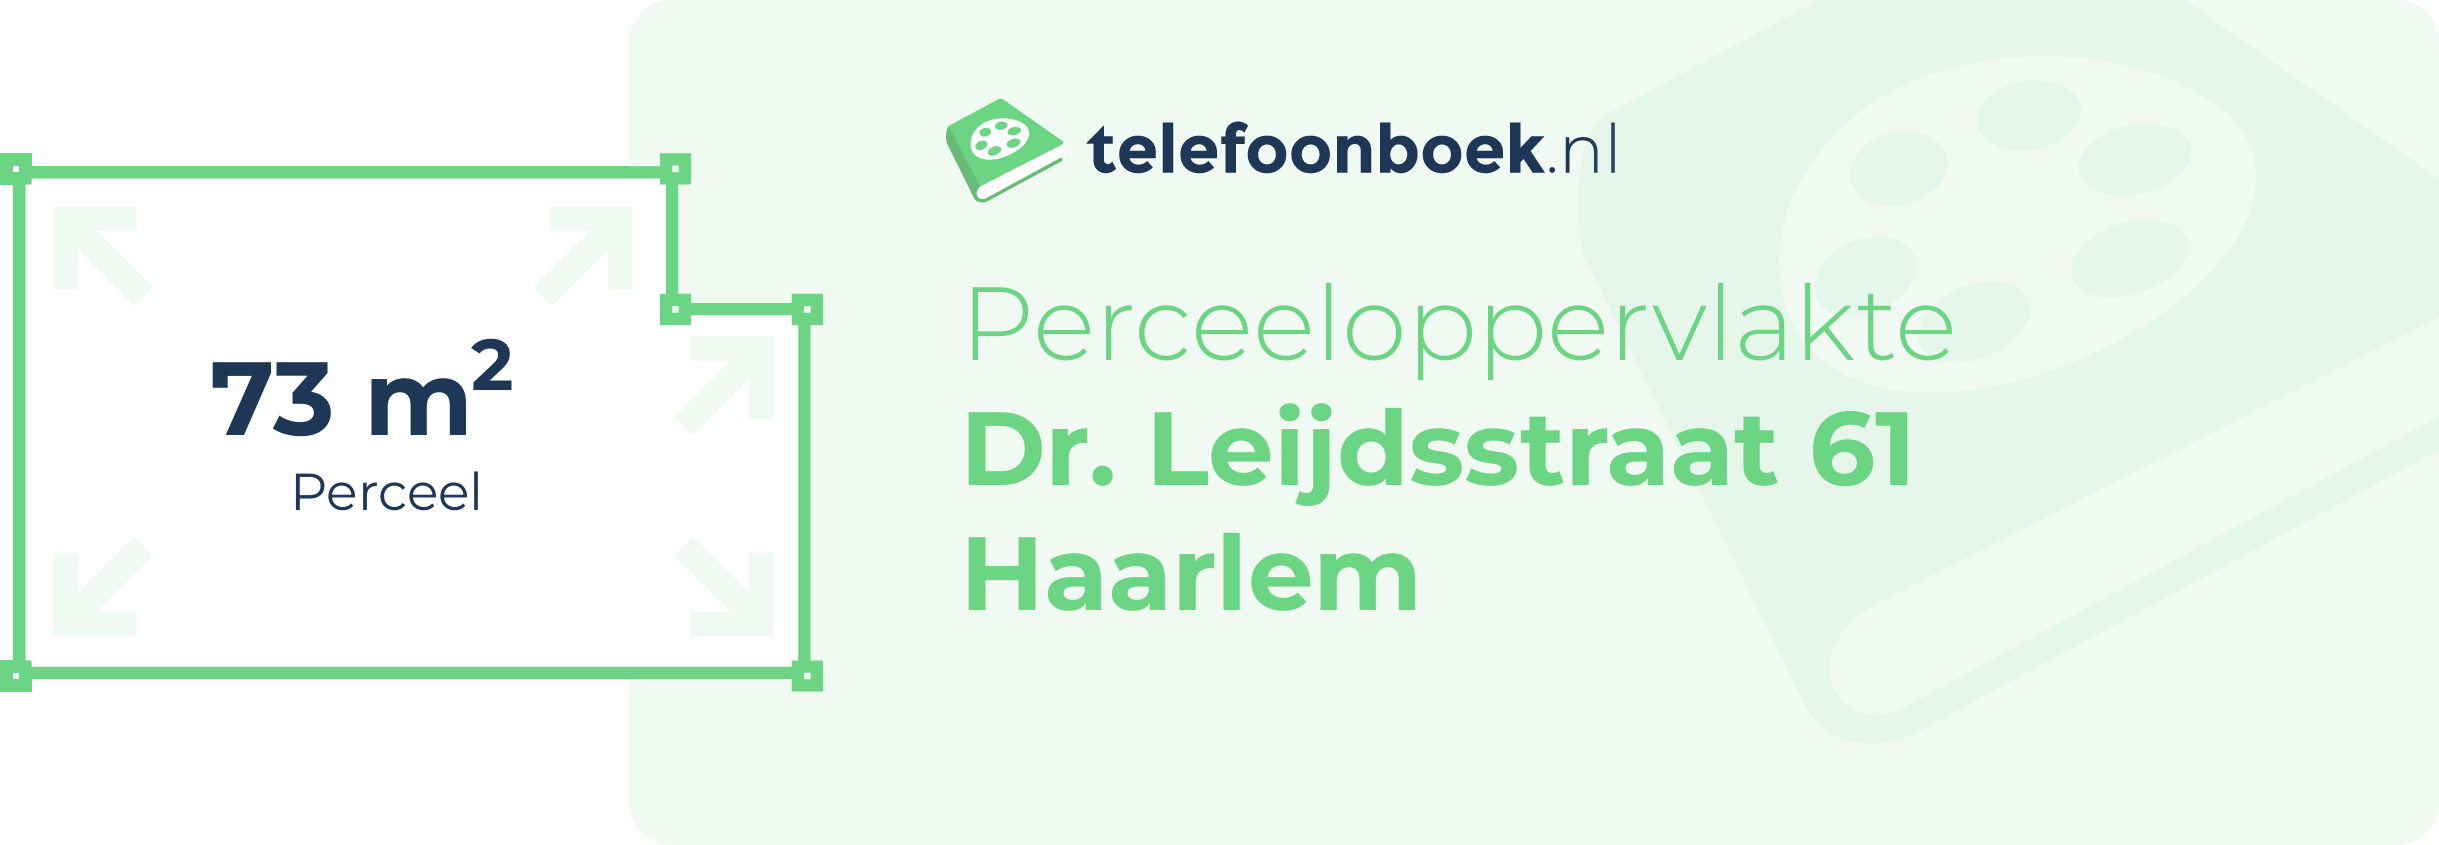 Perceeloppervlakte Dr. Leijdsstraat 61 Haarlem